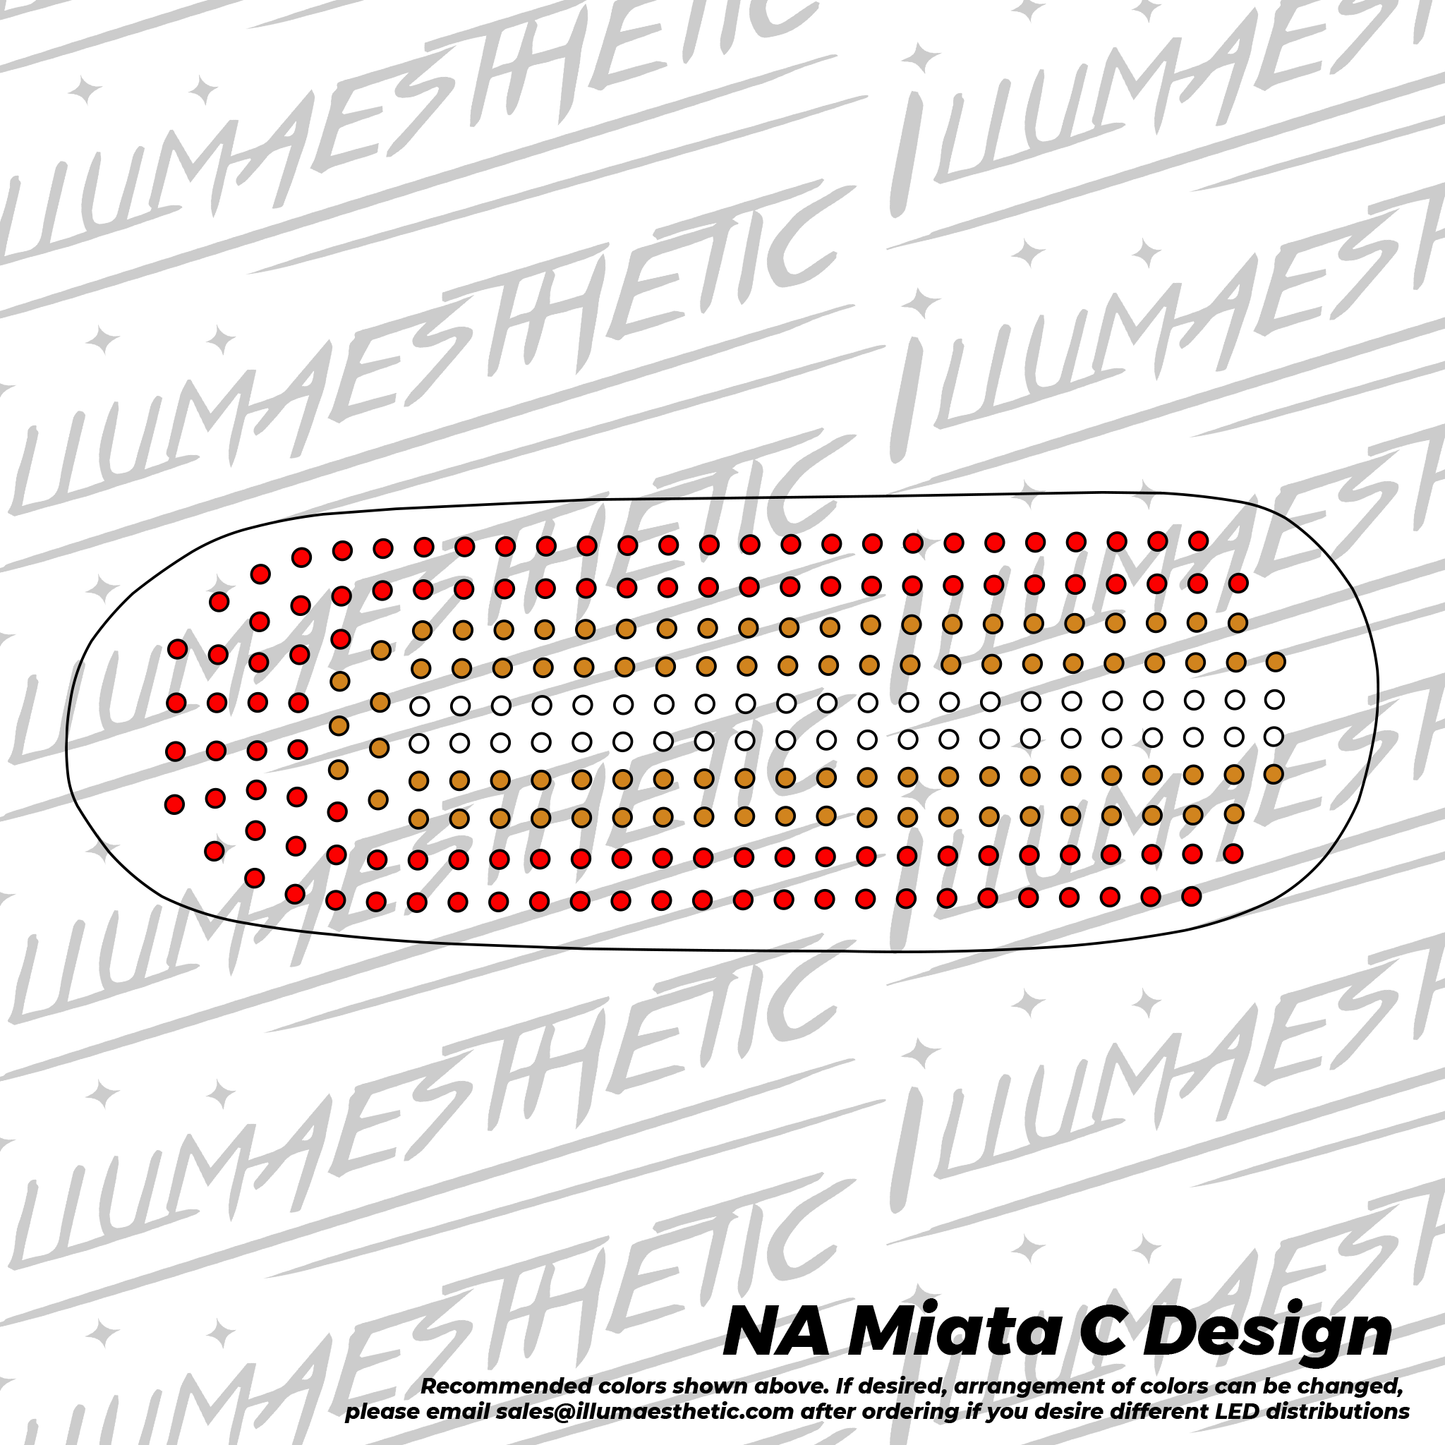 Mazda MX-5 Miata (NA)  - Complete DIY Kit (Aftermarket Base)